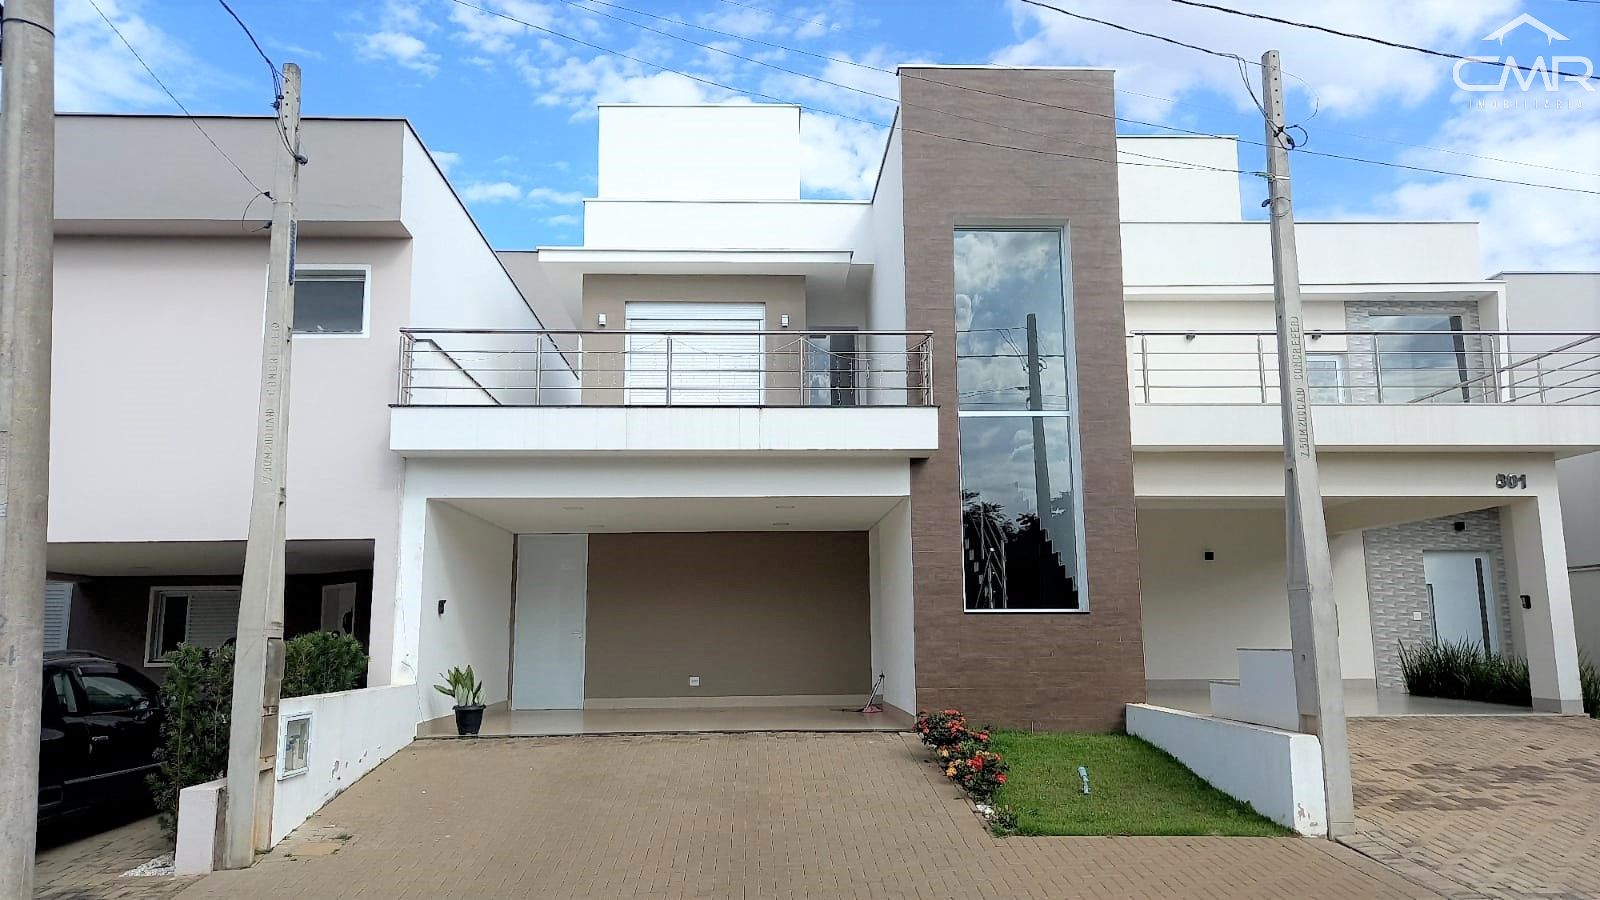 Casa em condomínio à venda  no Jardim São Francisco - Piracicaba, SP. Imóveis